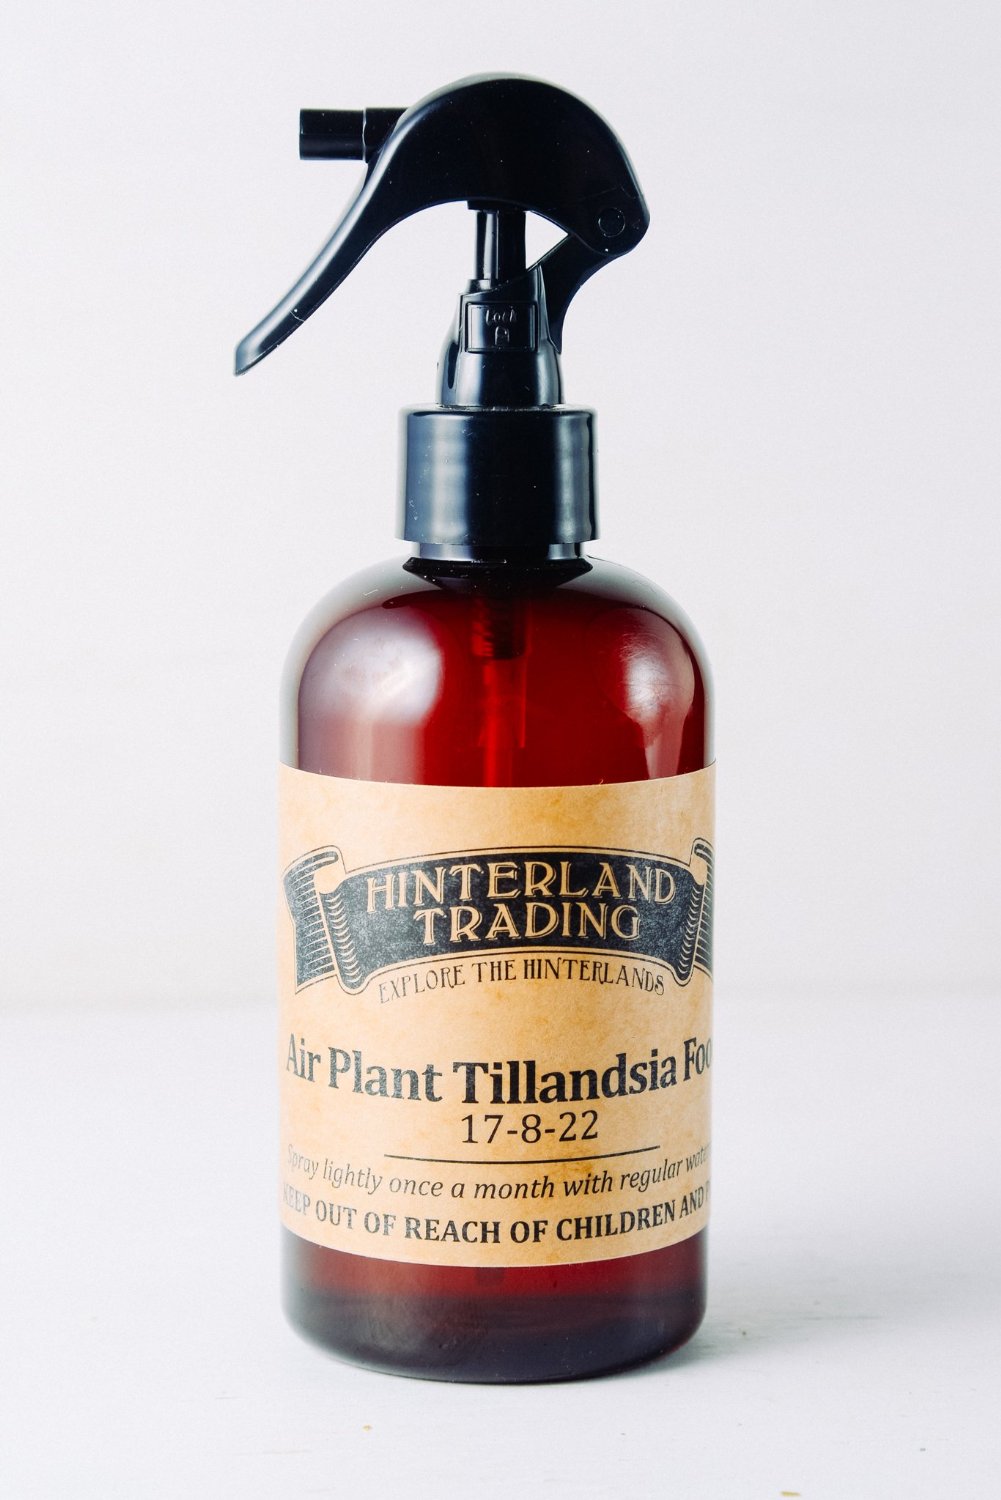 Hinterland Trading Air Plant Tillandsia Food Air Plants Fertilizer 17-8-22